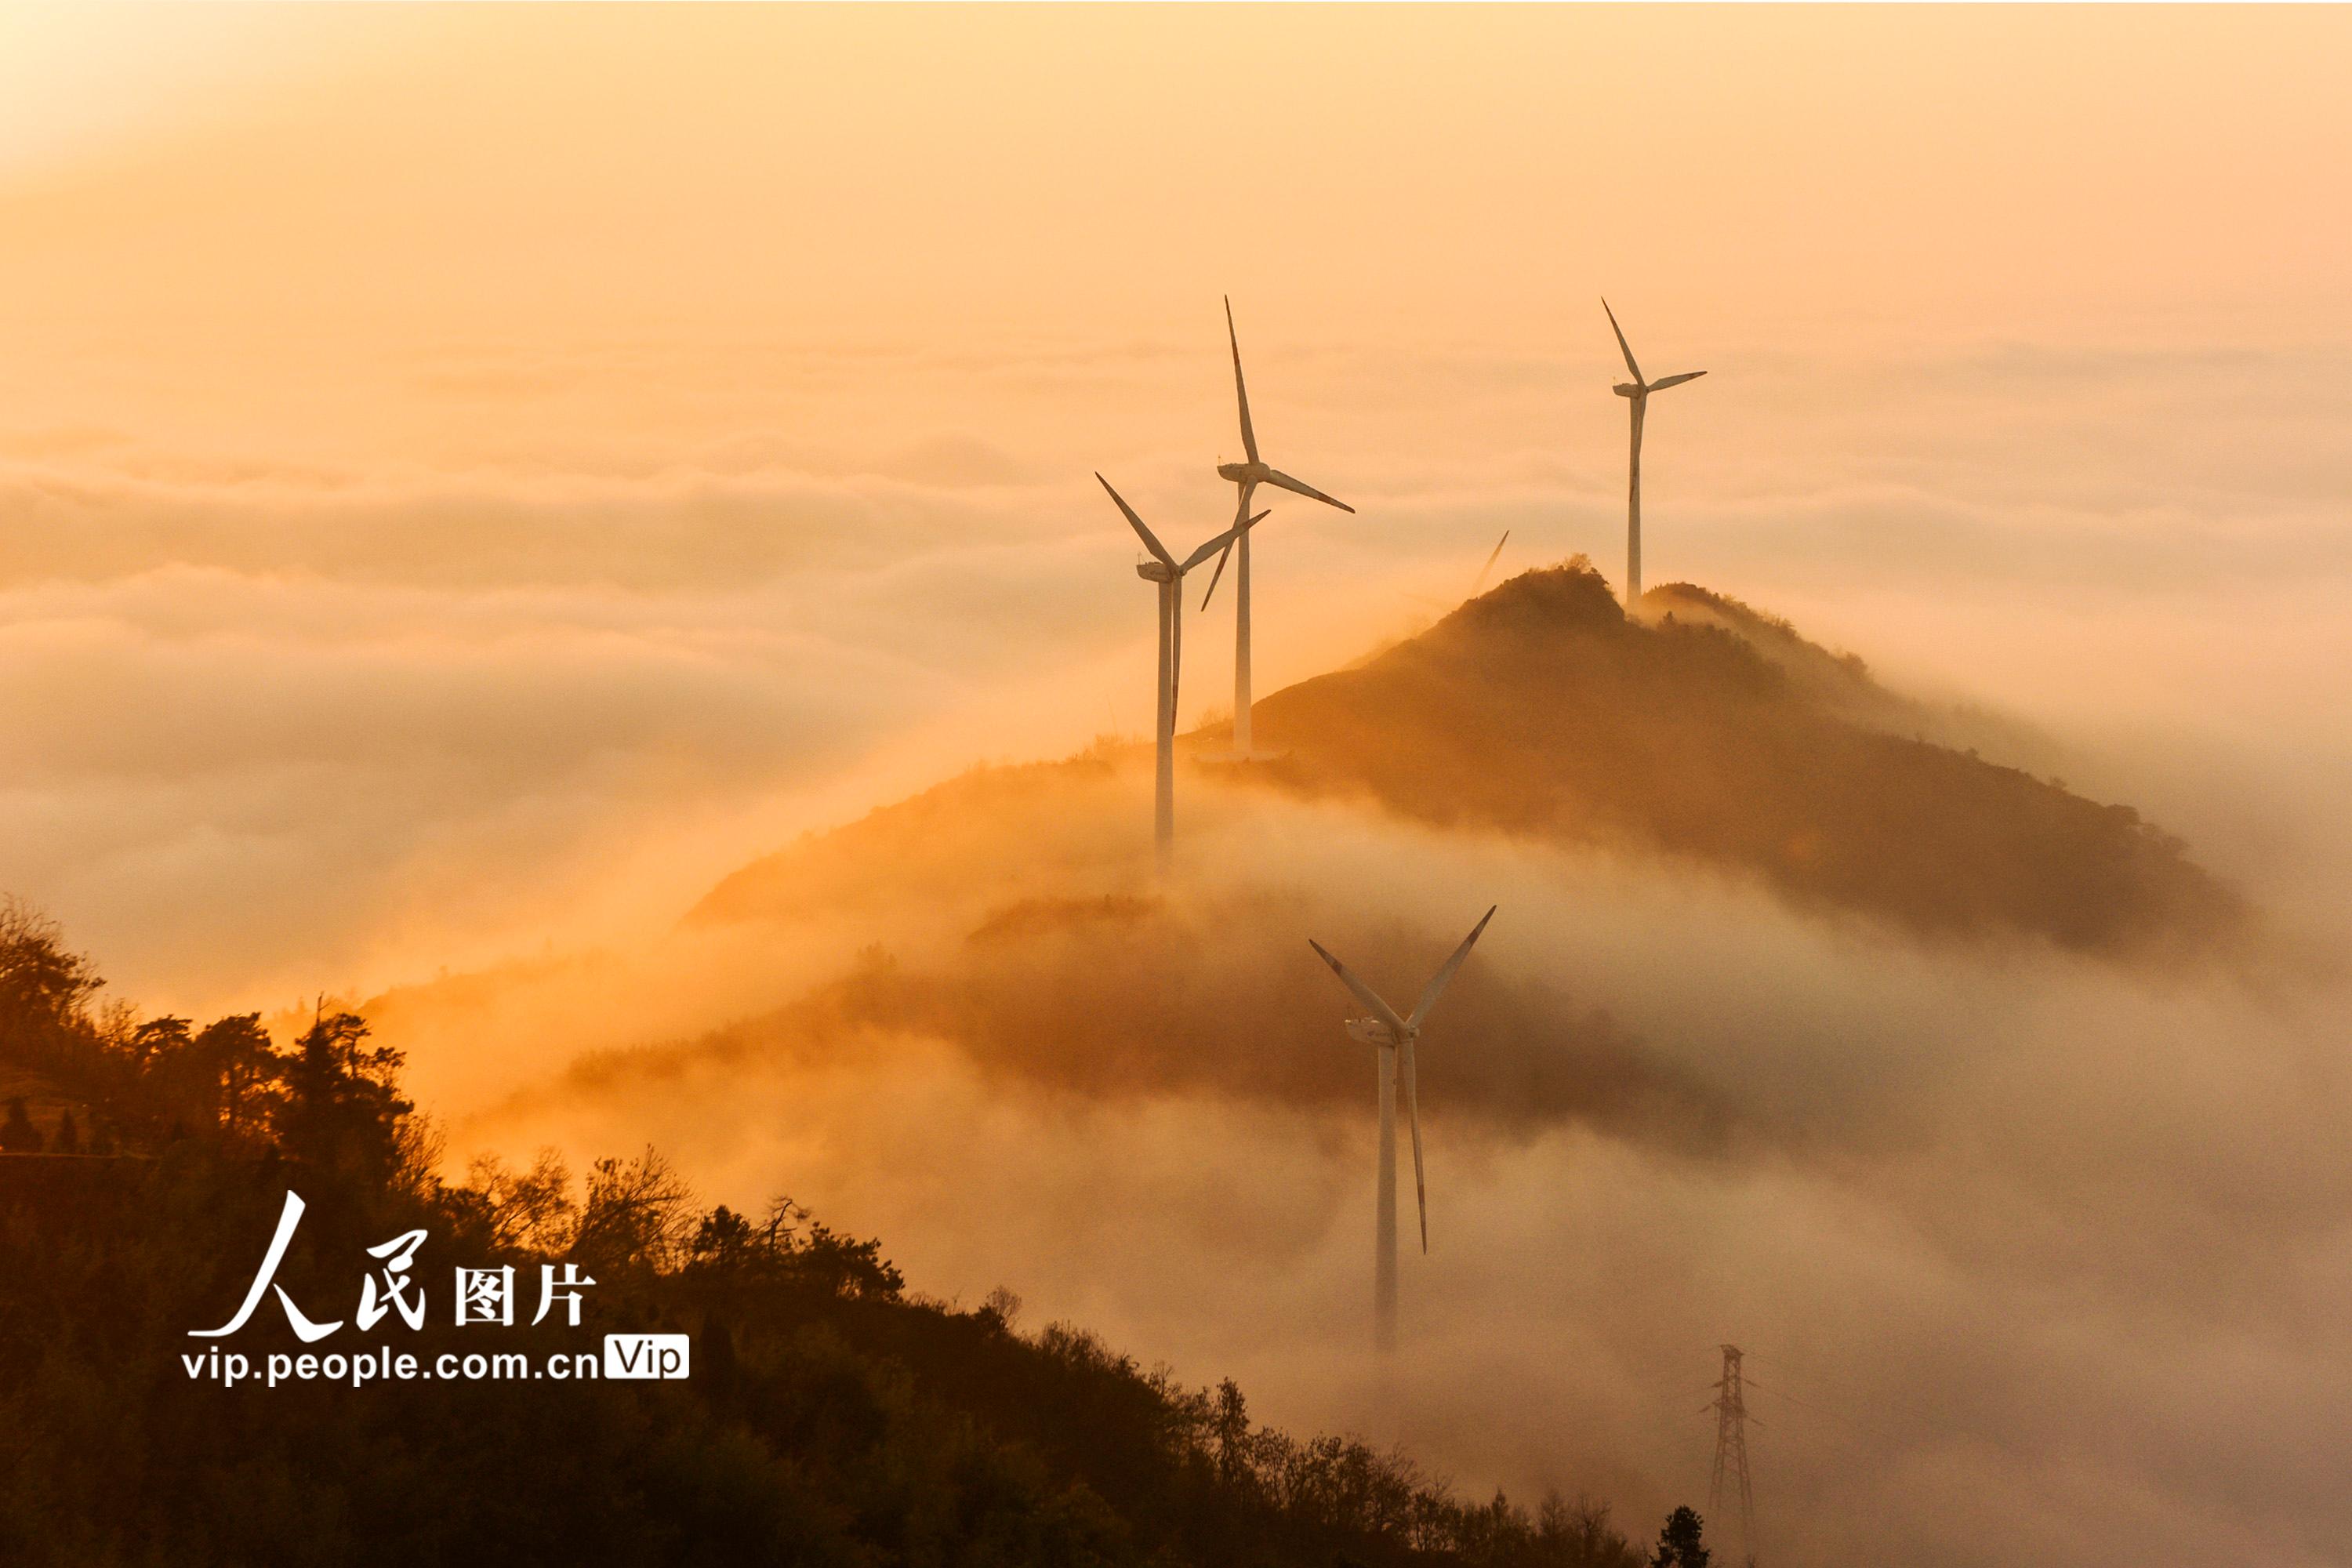 湖北省孝感市大悟县吕王镇仙居顶的风力发电机与云海相映成景。